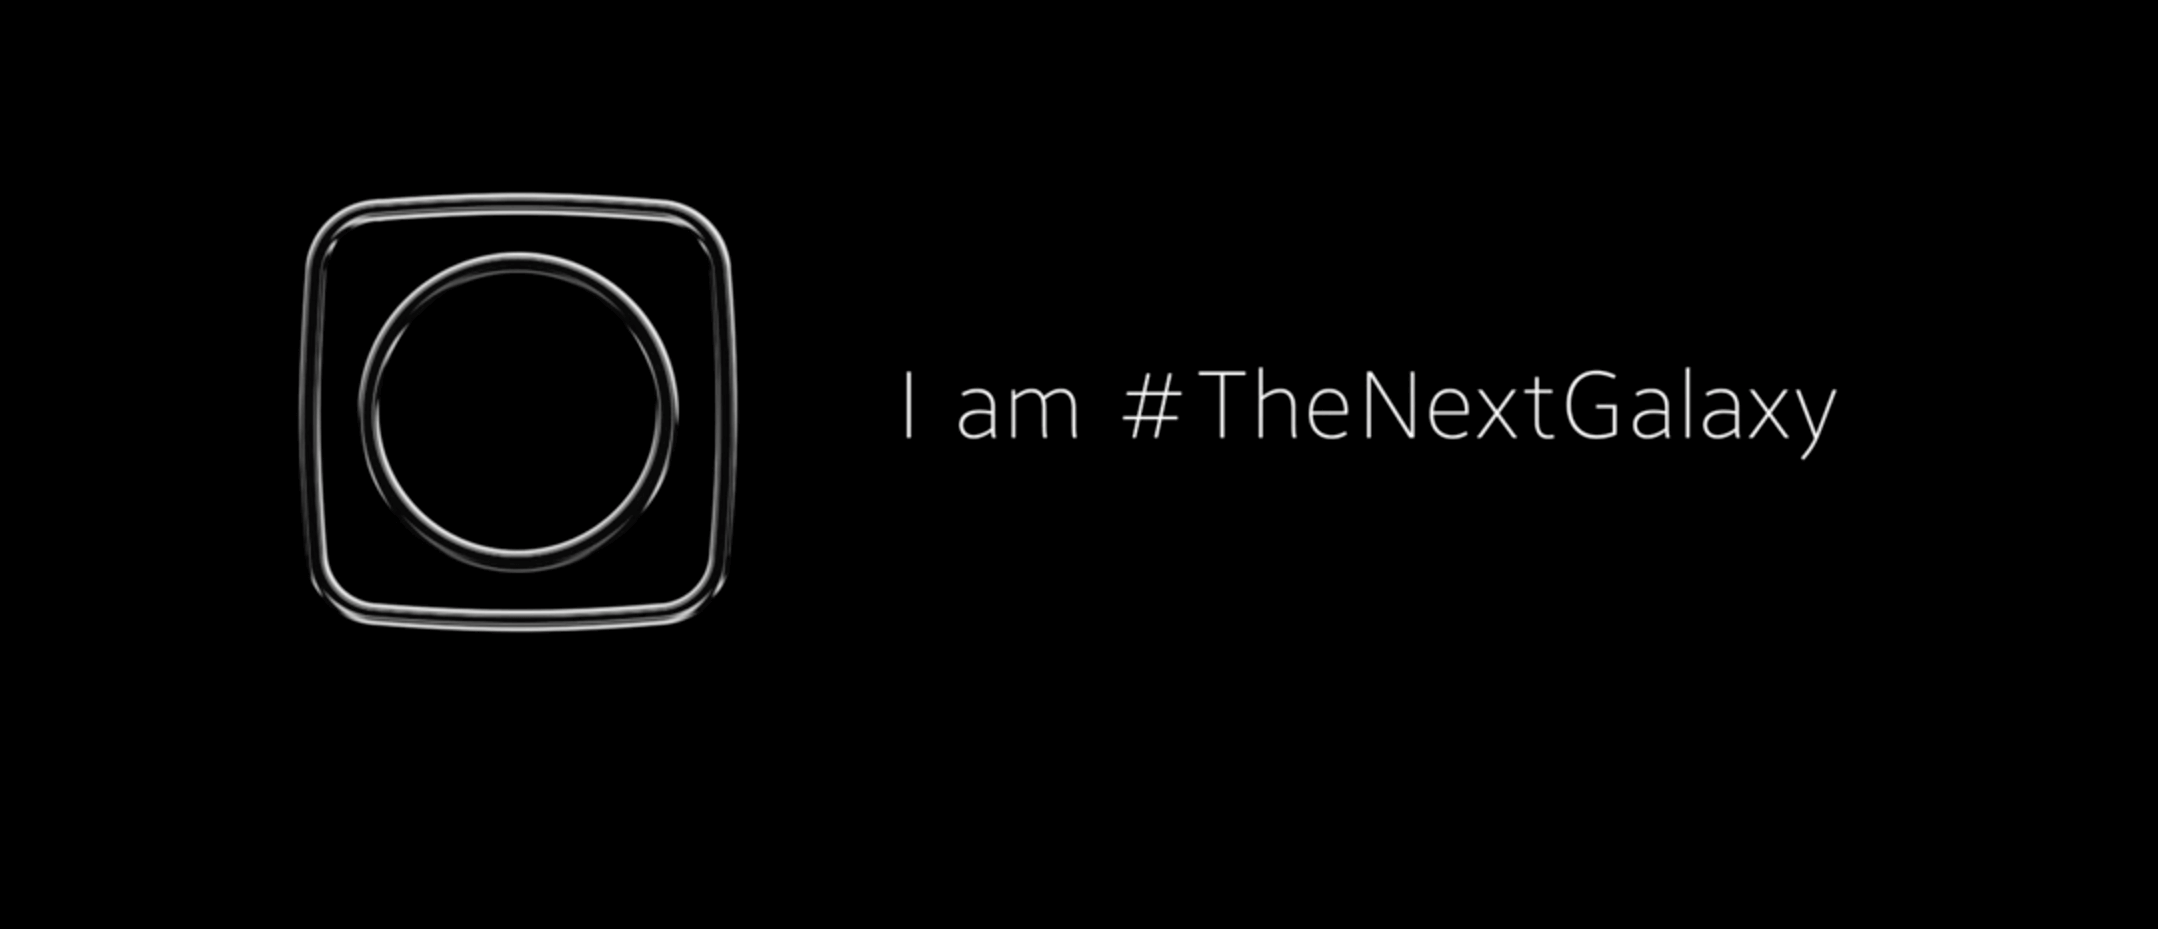 #TheNextGalaxy: Samsung Galaxy S6 Teaser über Twitter 3